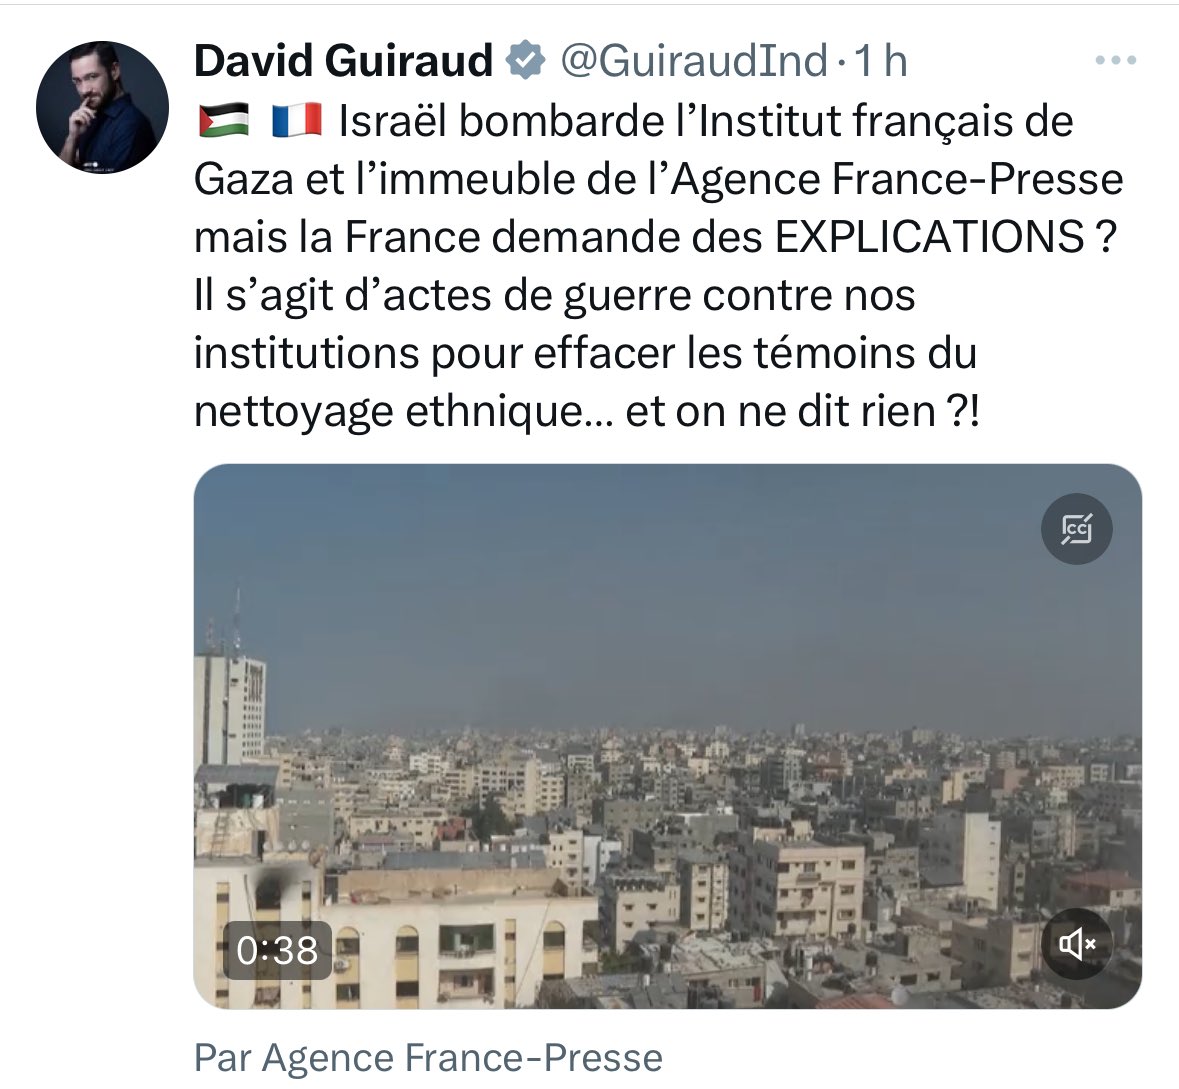 Guiraud est très très fort pour défendre les islamistes, comme il l'a fait avec l'imam antisemite Iquioussen en France. 

Niveau propagande il me rappelle parfois Goebels. Mais niveau qualité on est plus proche d'AliExpress. 

1. L'AFP elle-même a indiqué que le bâtiment était